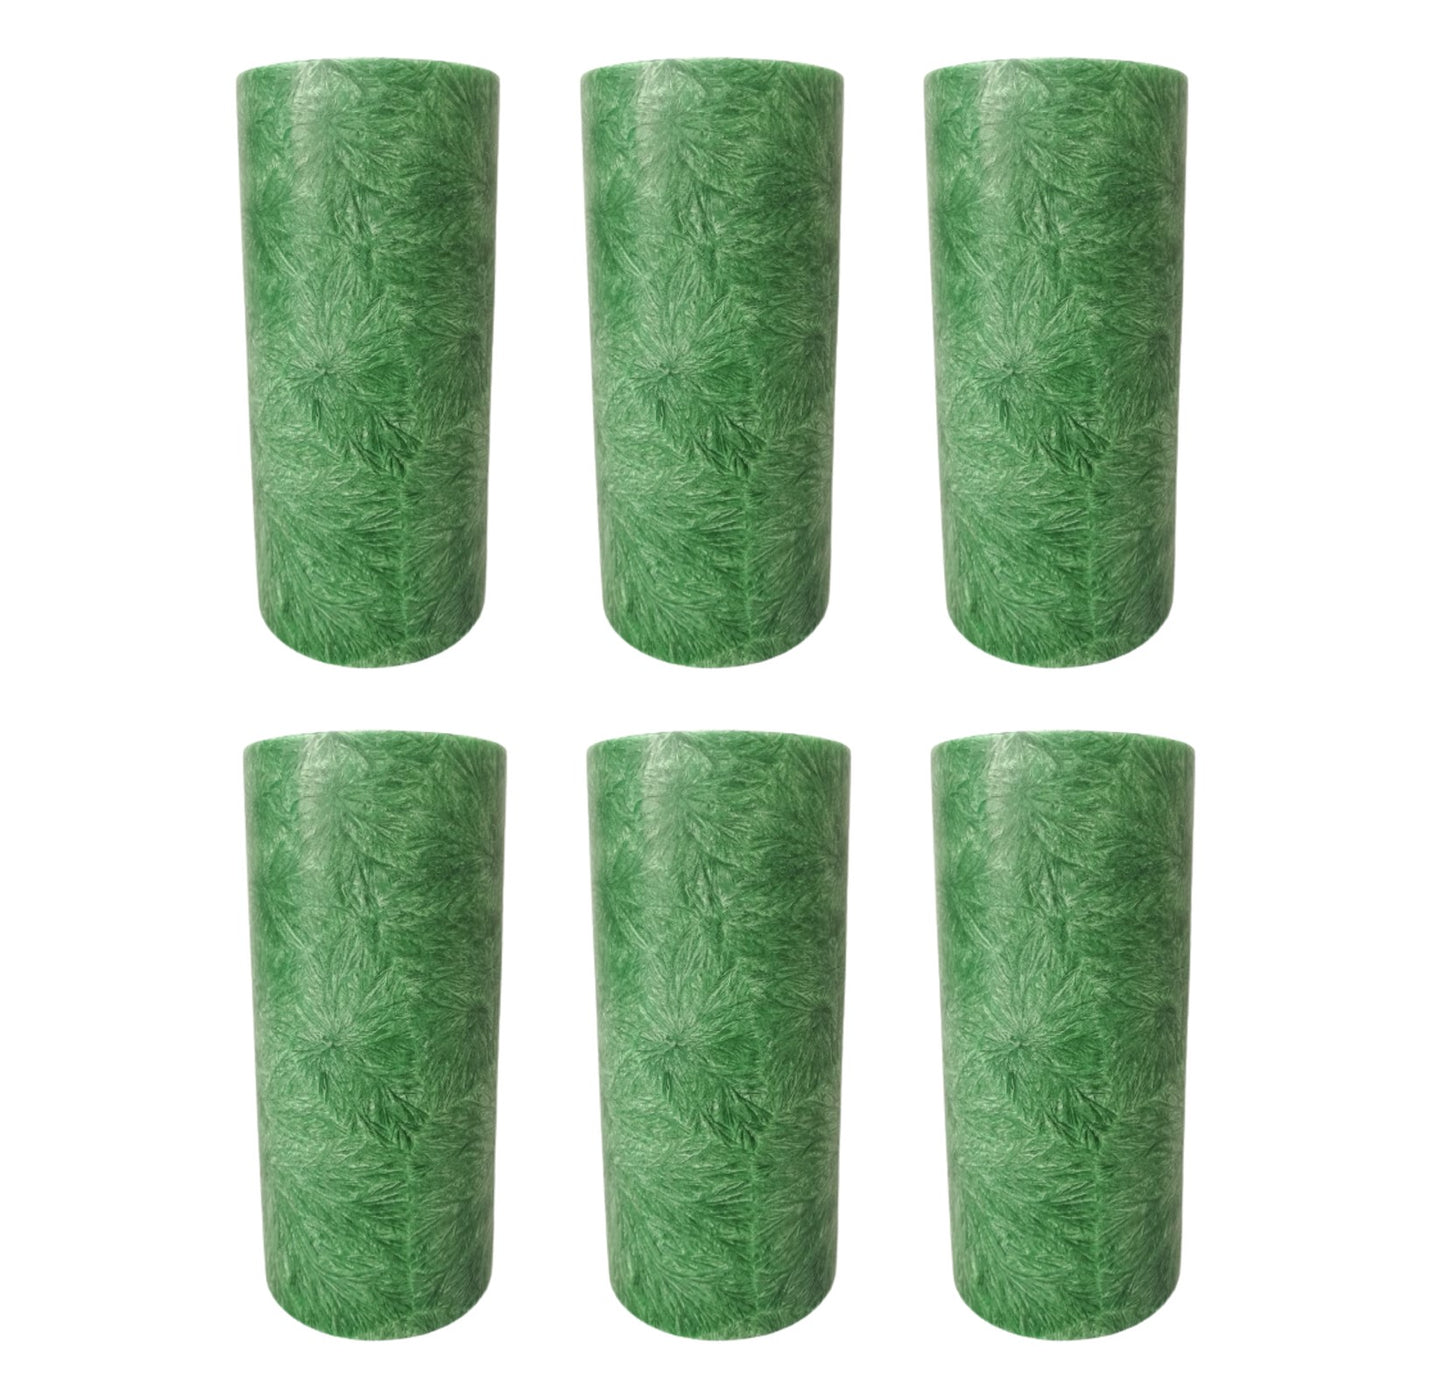 6er Set Stearin-Stumpenkerzen, 13,5 x 6,4 cm, Dunkelgrün durchgefärbt